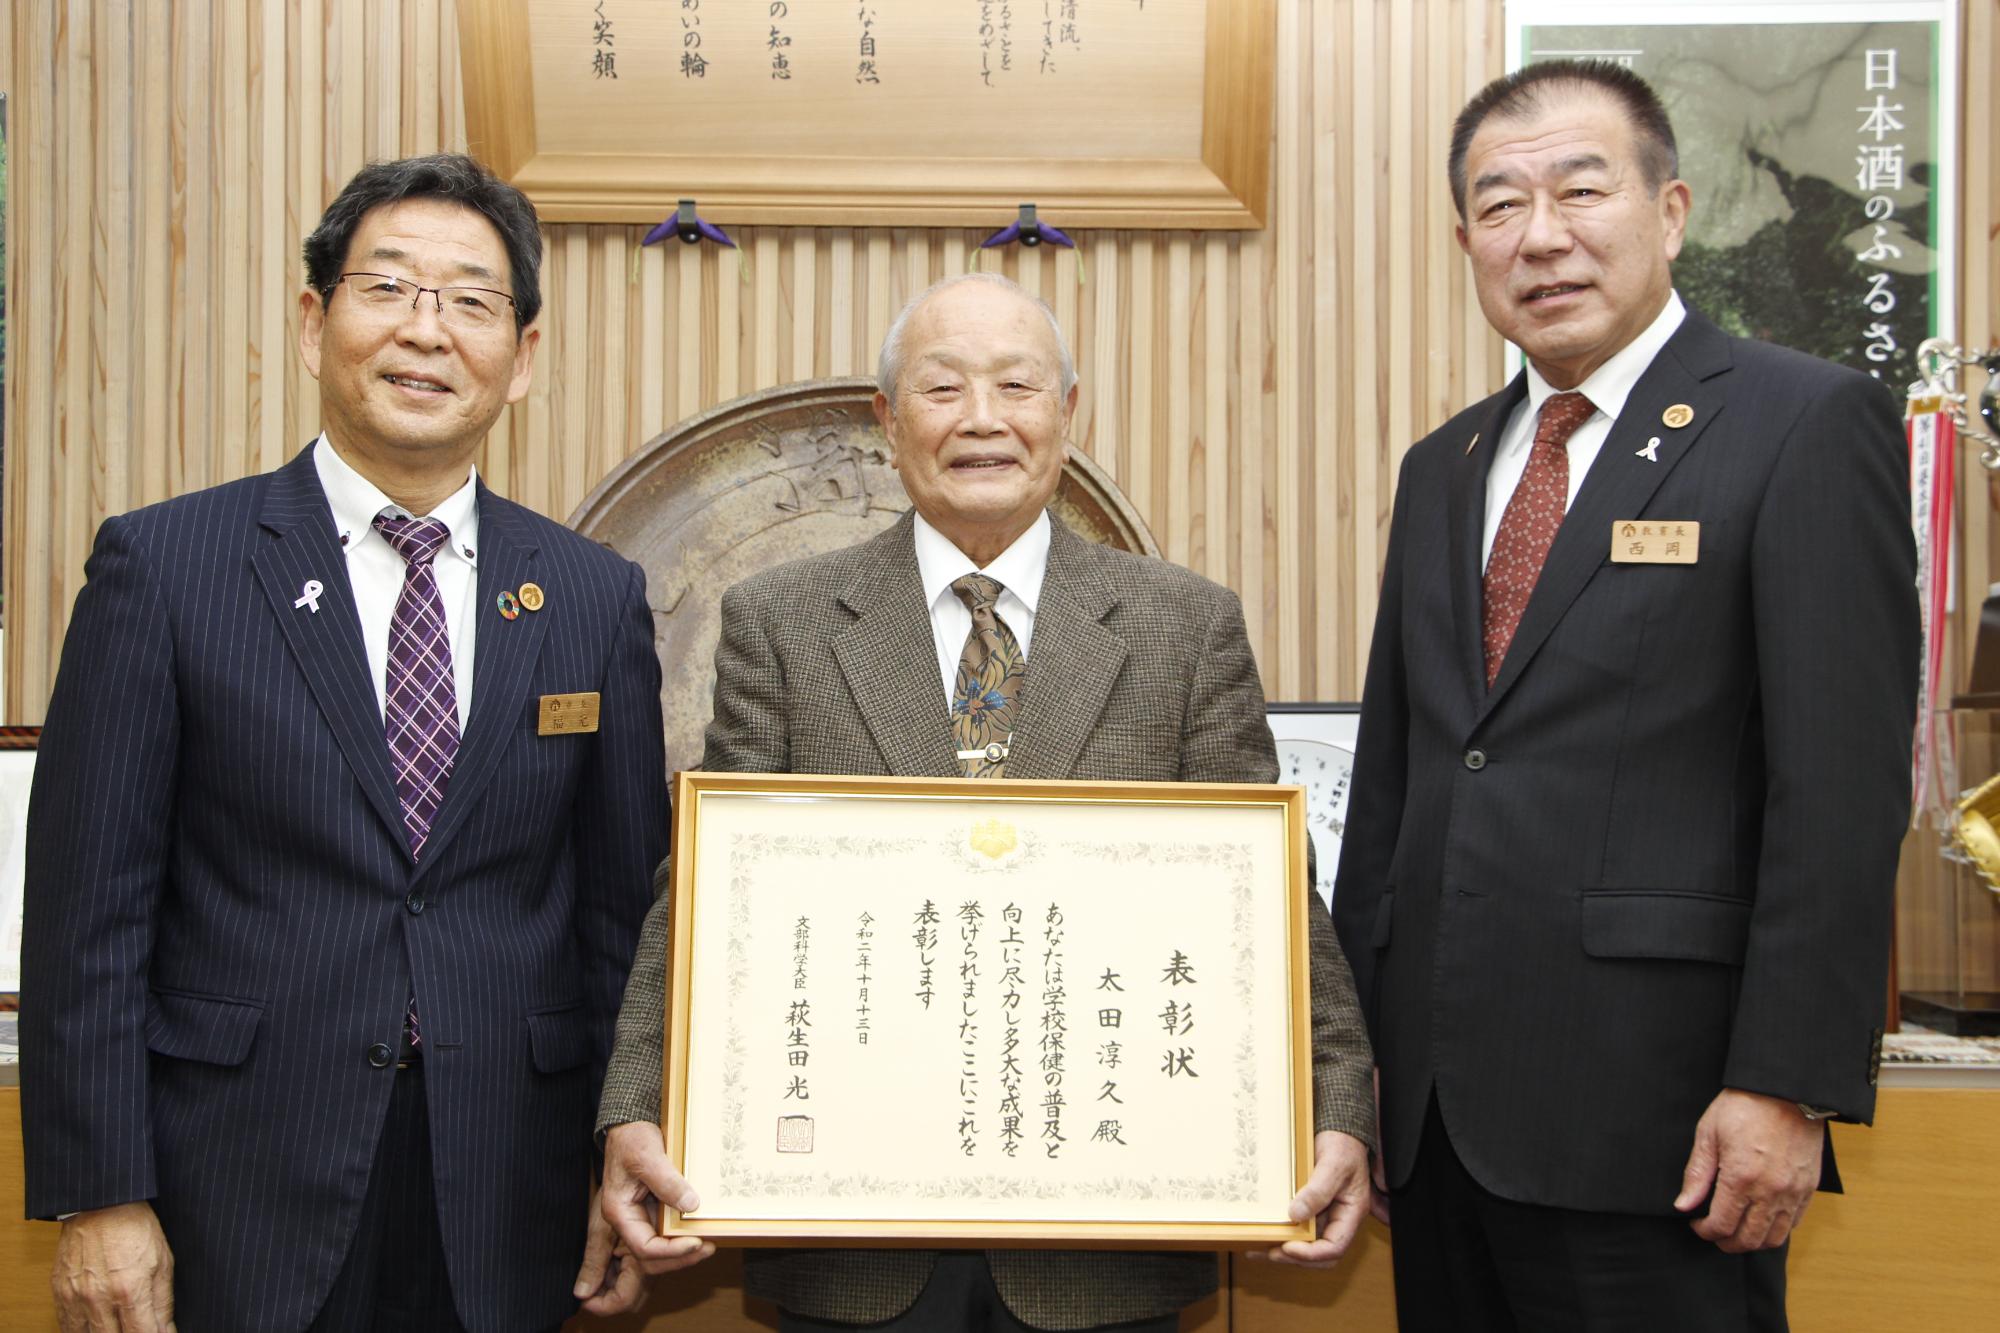 文部科学大臣表彰の額を手にした太田医師とそれを囲む福元市長と西岡教育長の写真